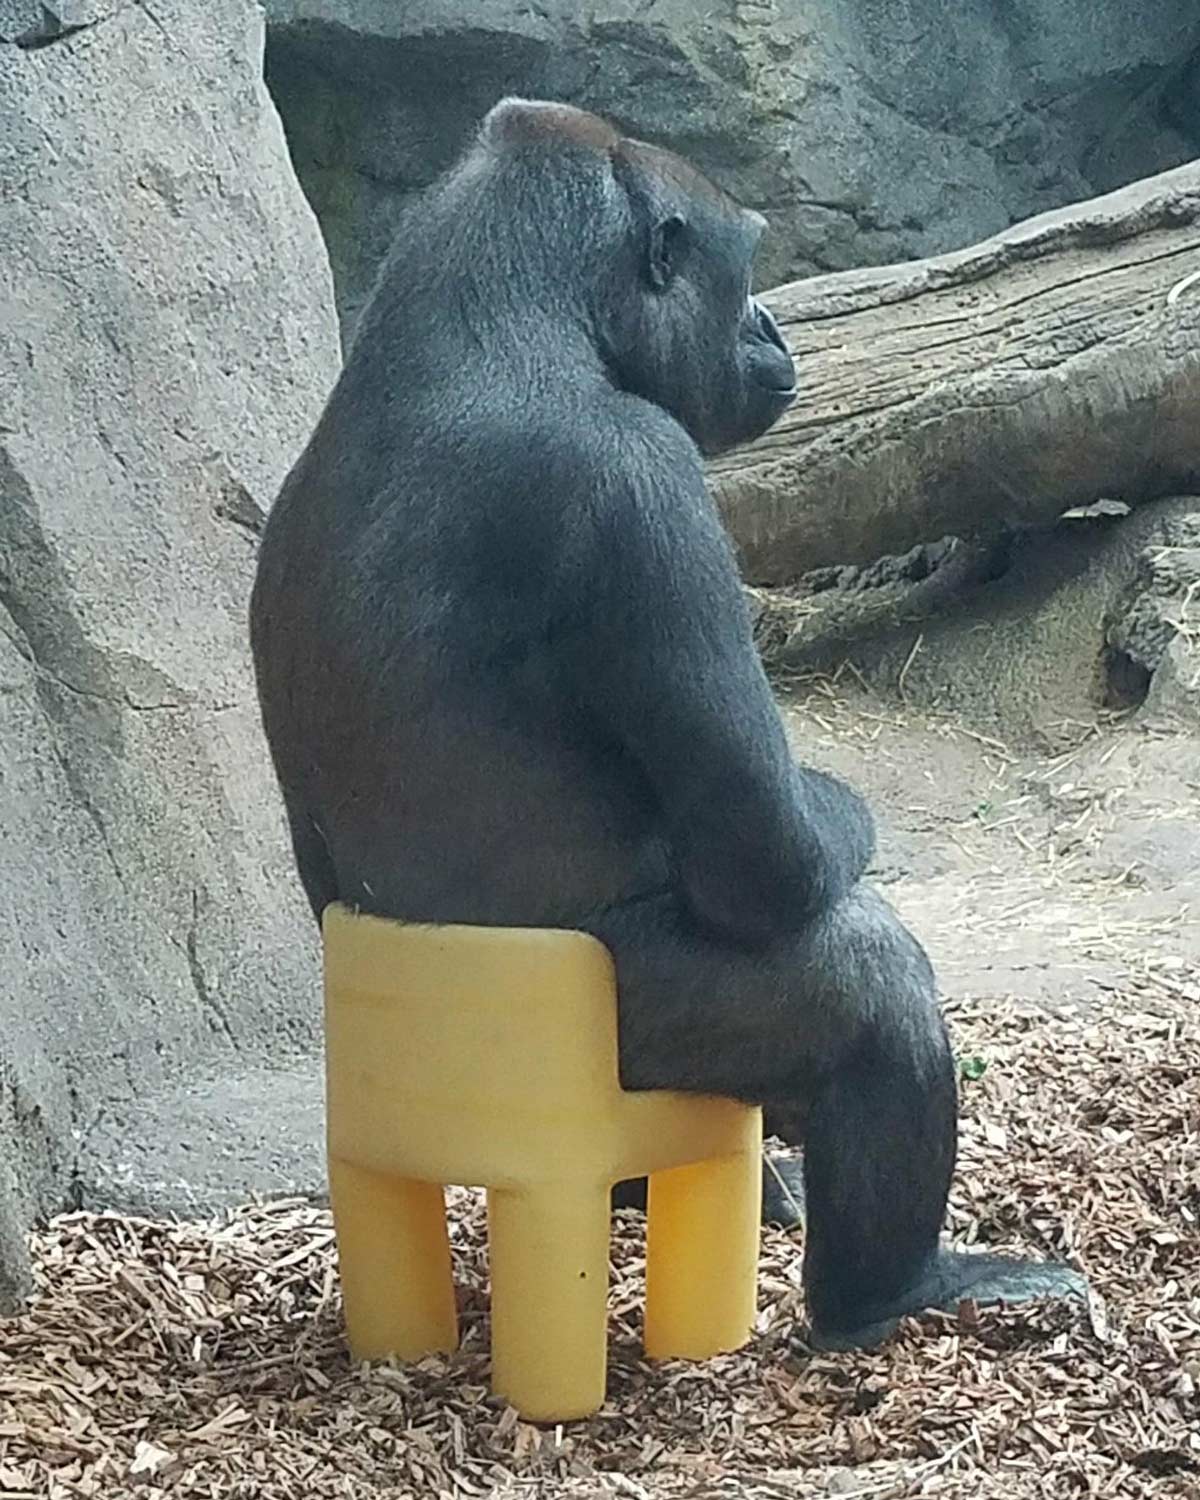 Gorilla in a kid’s chair